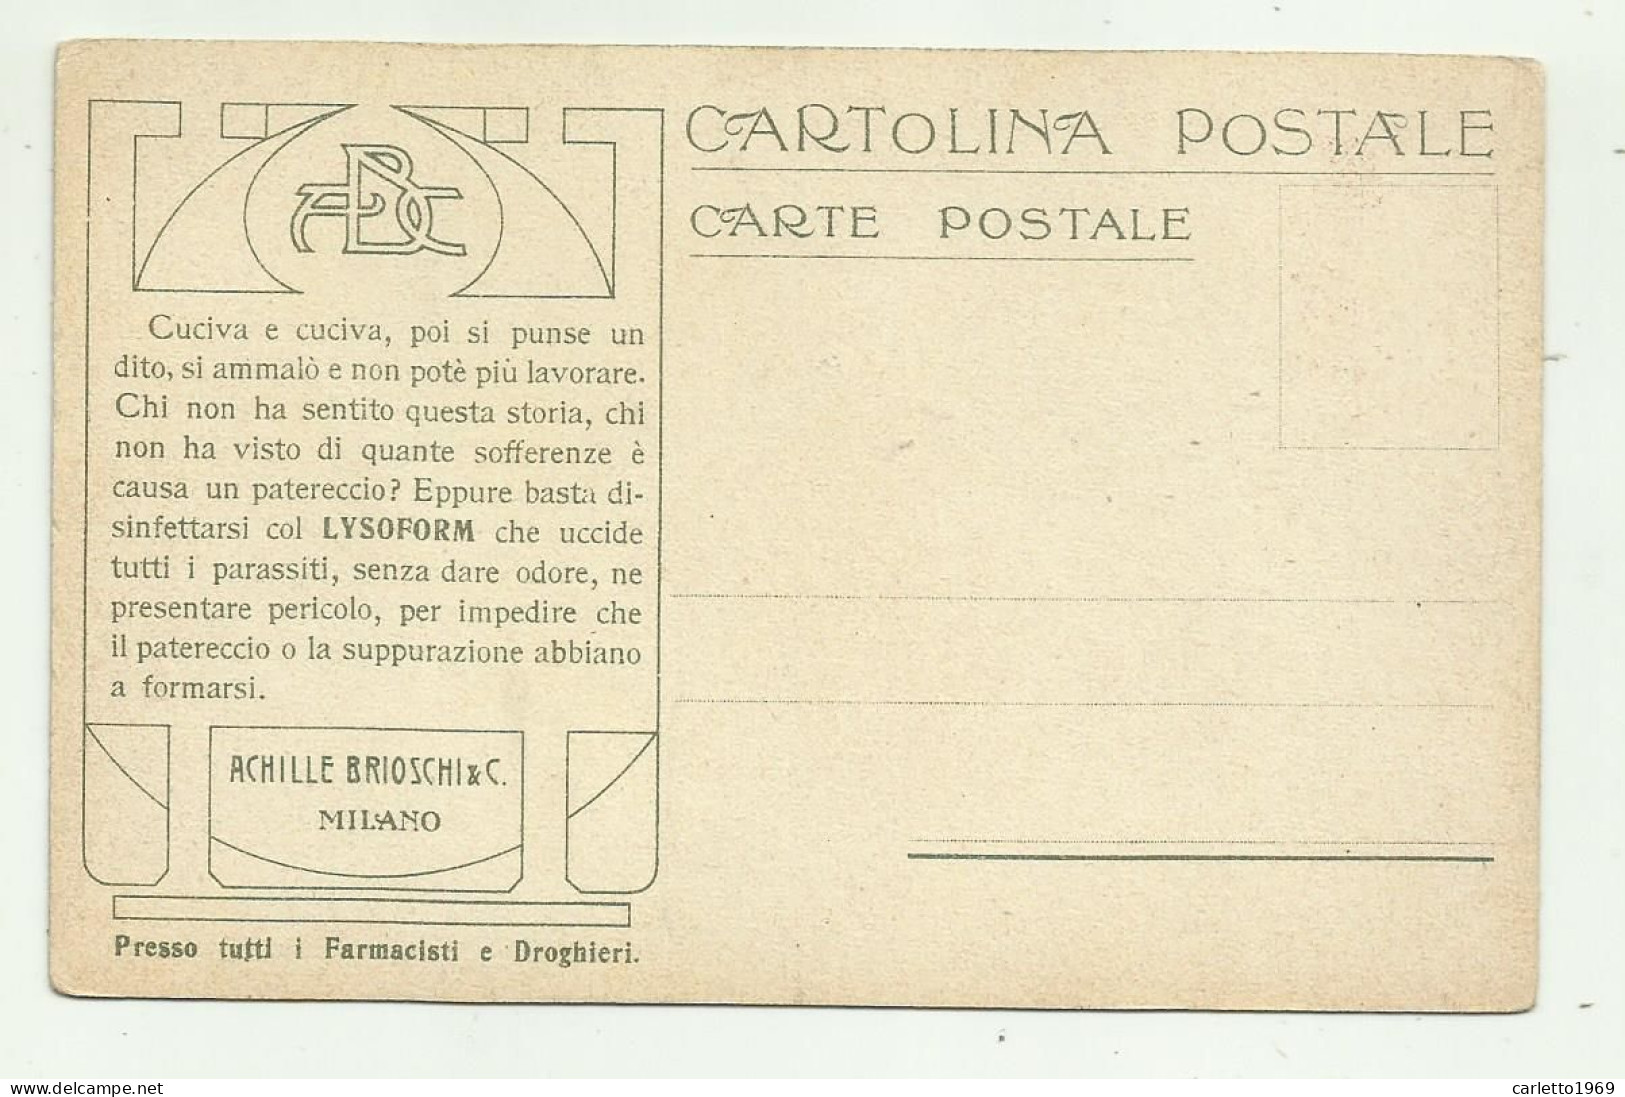 8 CARTOLINE LA POSTA IN - RETRO PUBBLICITA' ACHILLE BRIOSCHI & C. MILANO  - NV  FP - Post